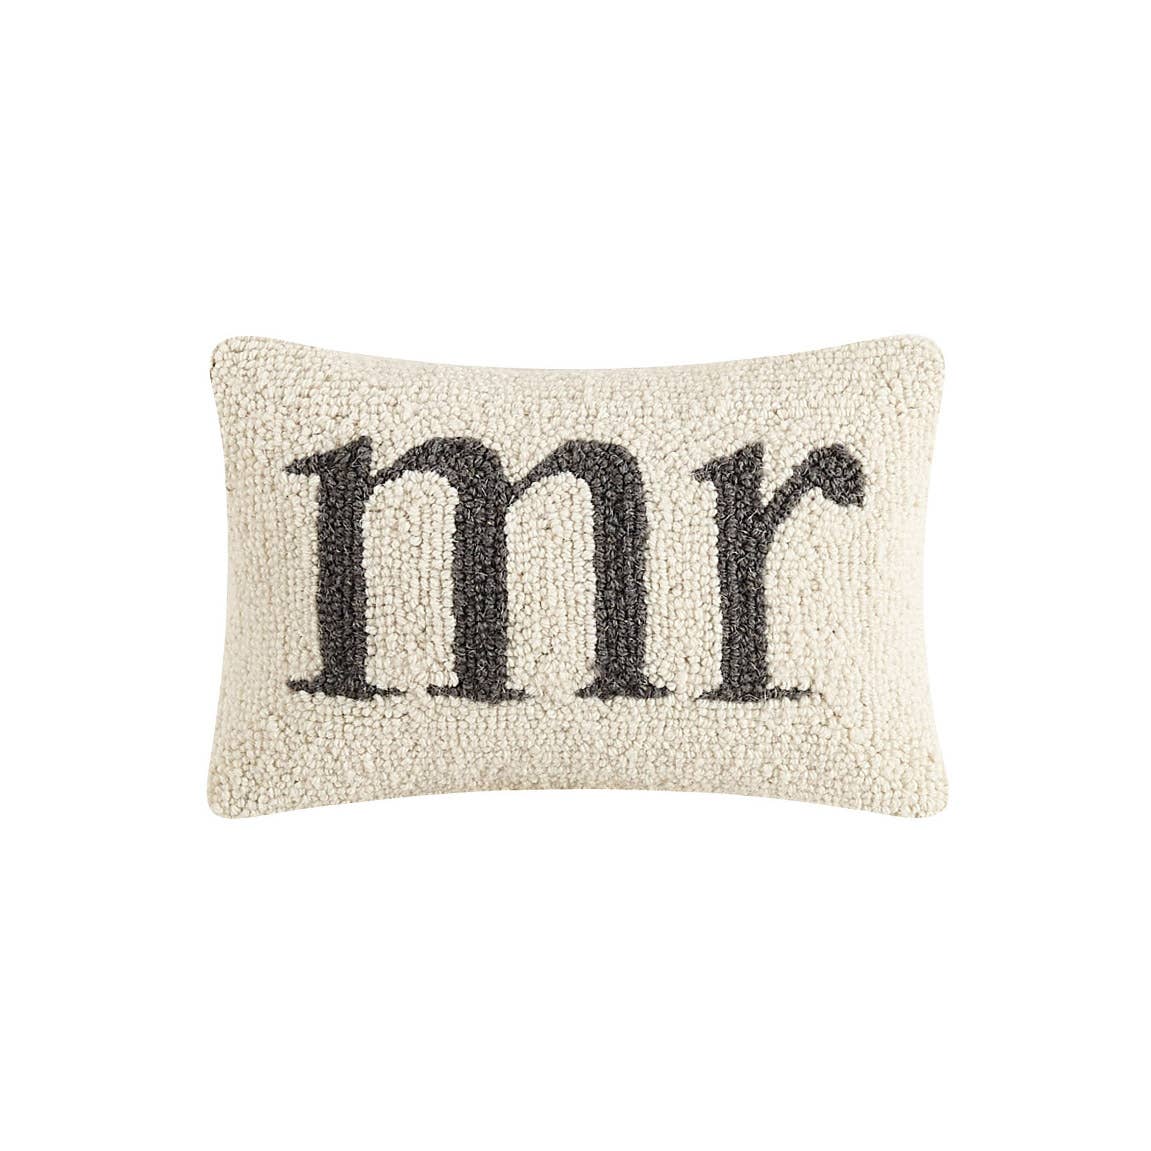 Mr. Hook Pillow-Textiles > Home & Garden > Decor > Throw Pillows-Quinn's Mercantile